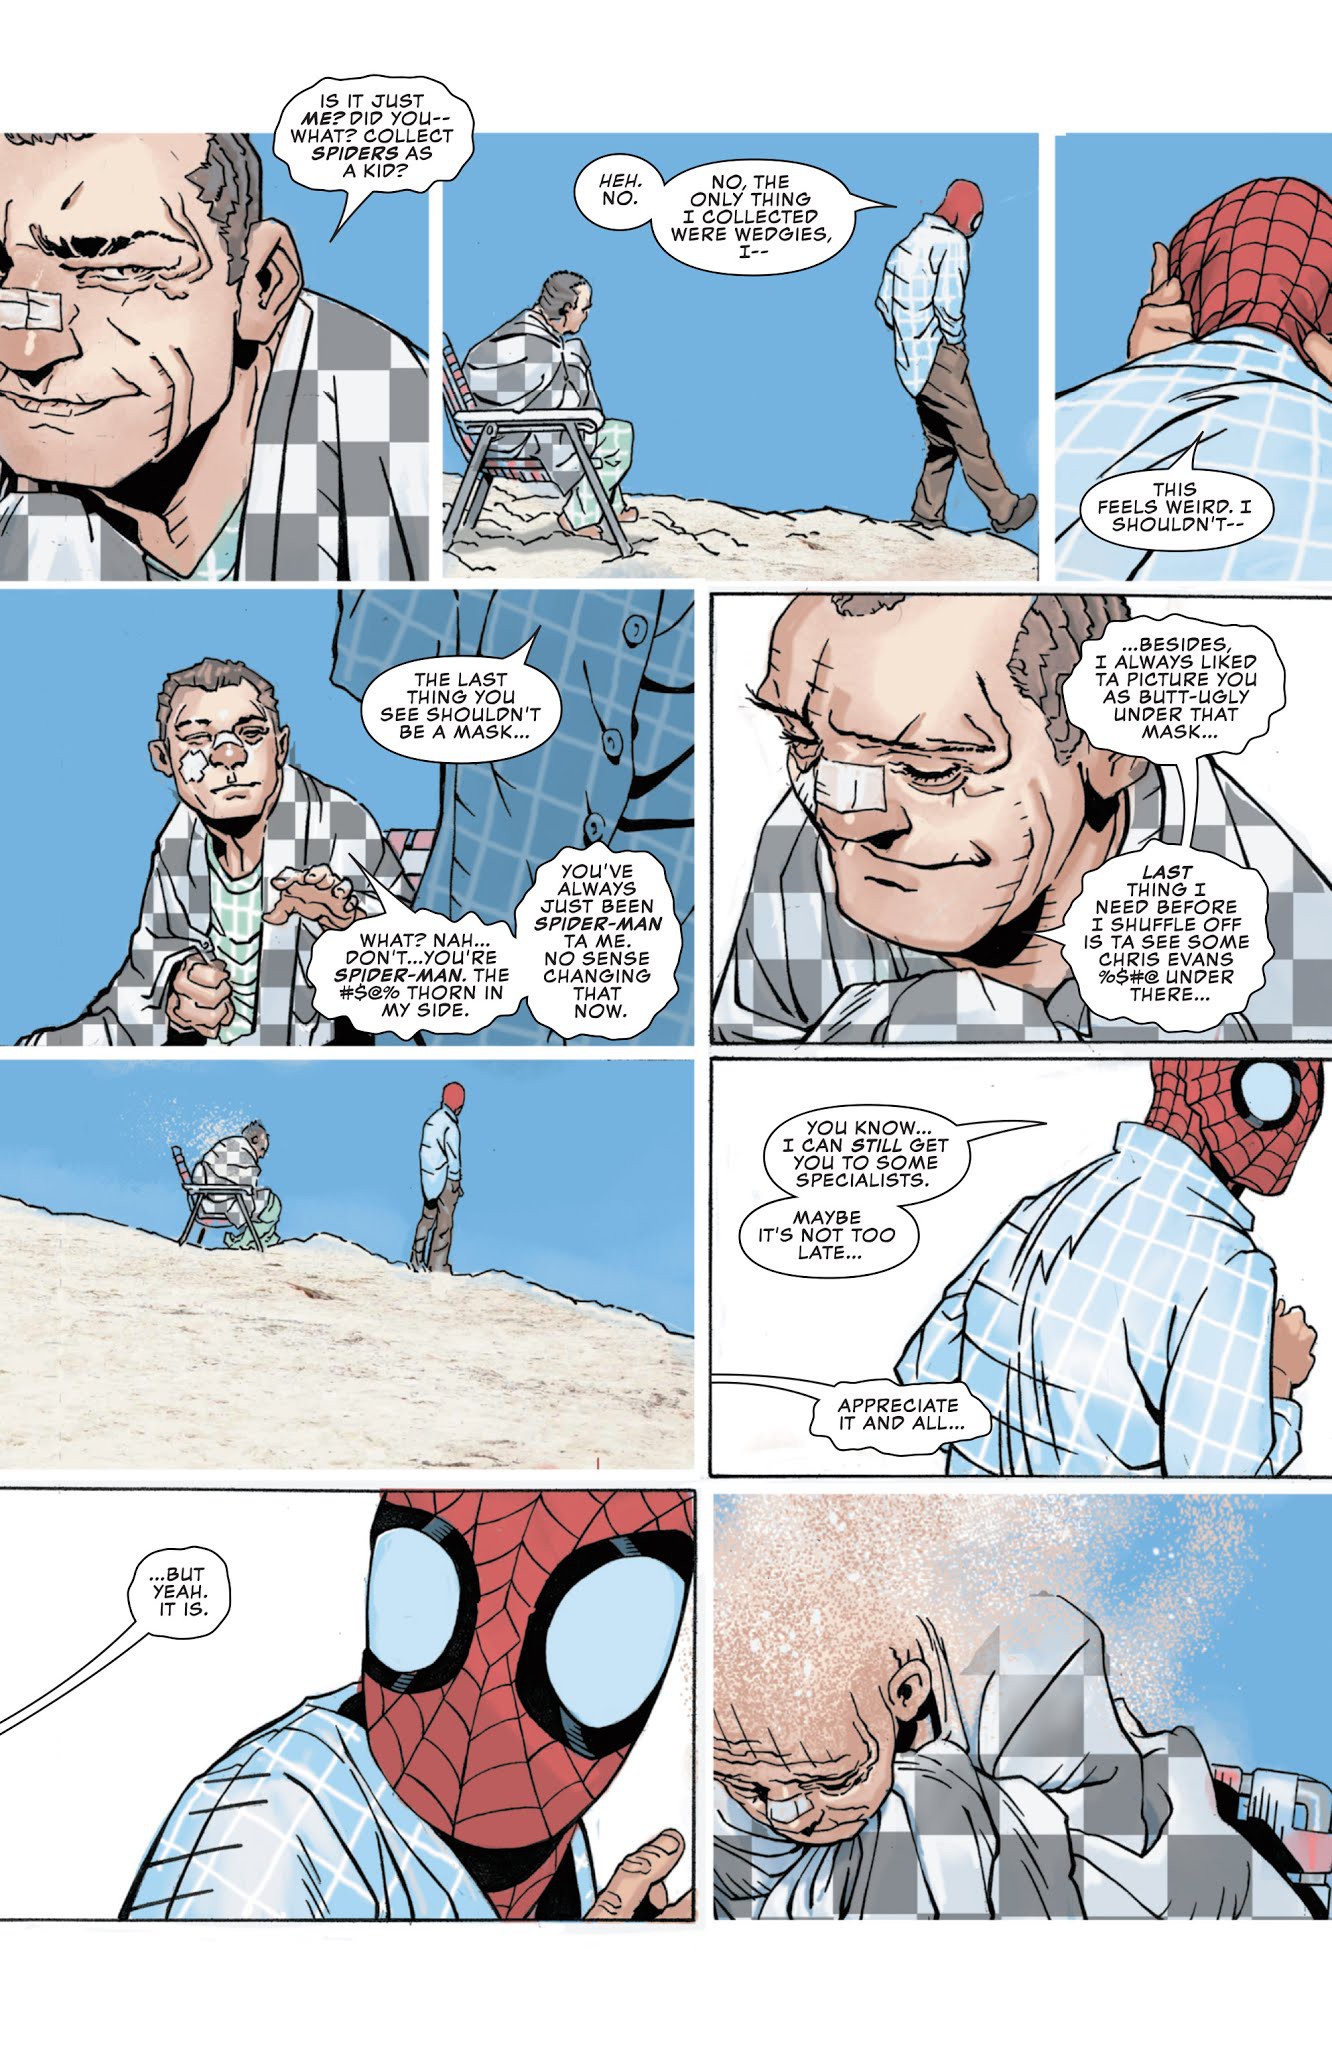 Comics Trivia: Sở hữu sức mạnh của Sandman, Spider-Man hóa Nhện Cát siêu  khổng lồ